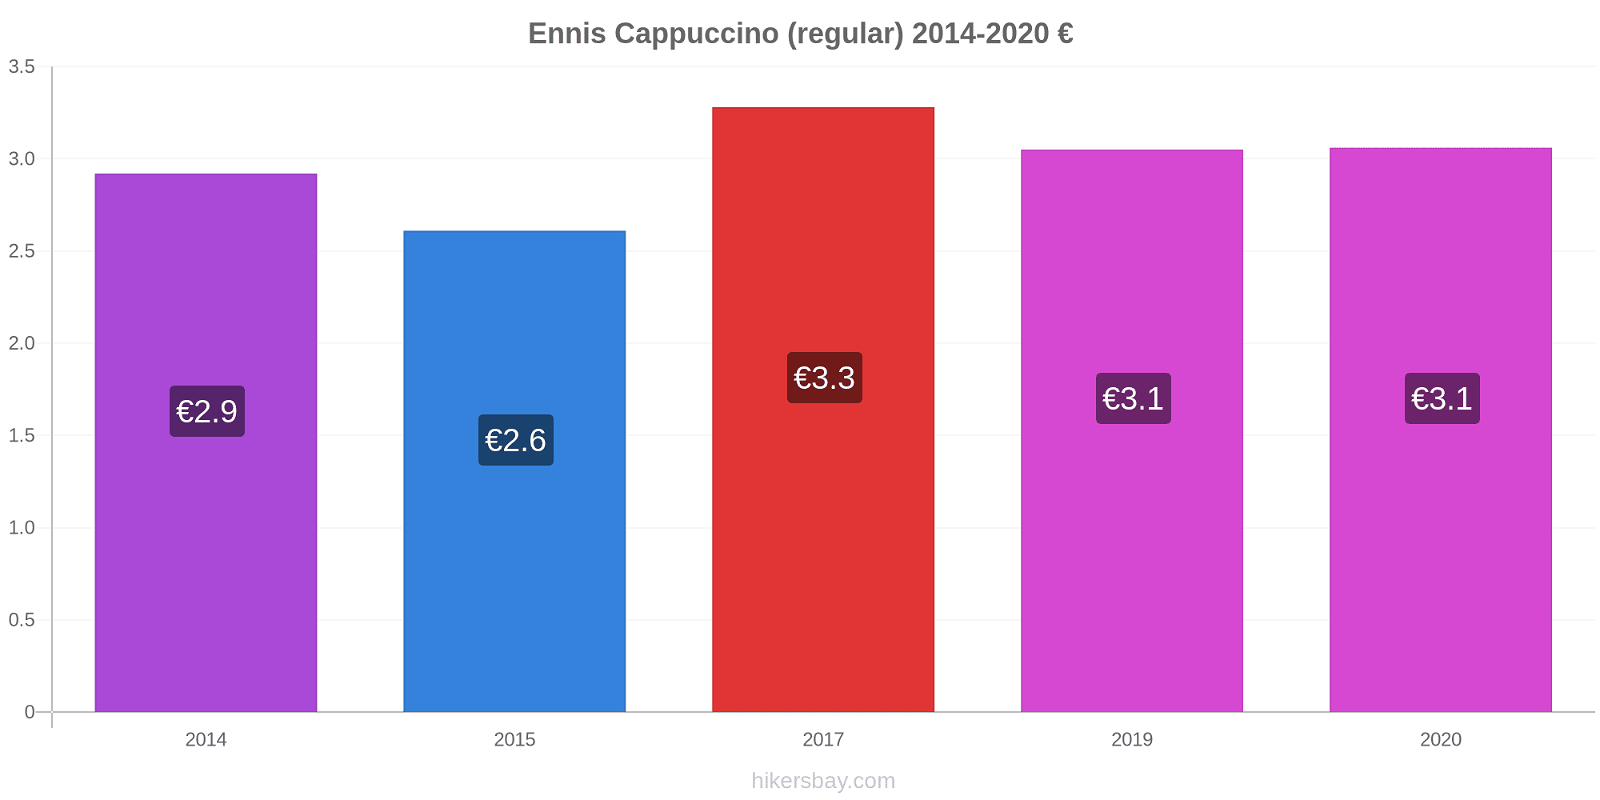 Ennis price changes Cappuccino (regular) hikersbay.com